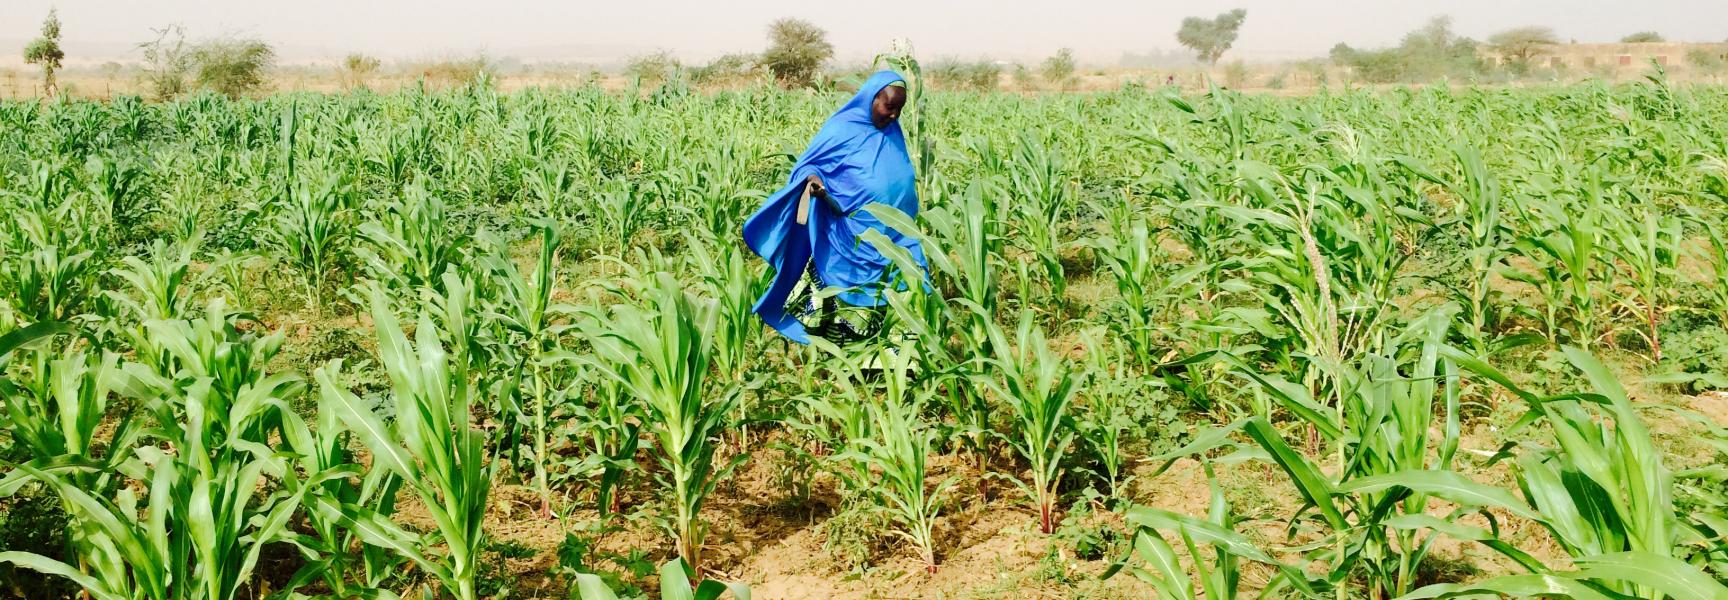 A woman walking in a field in Niger